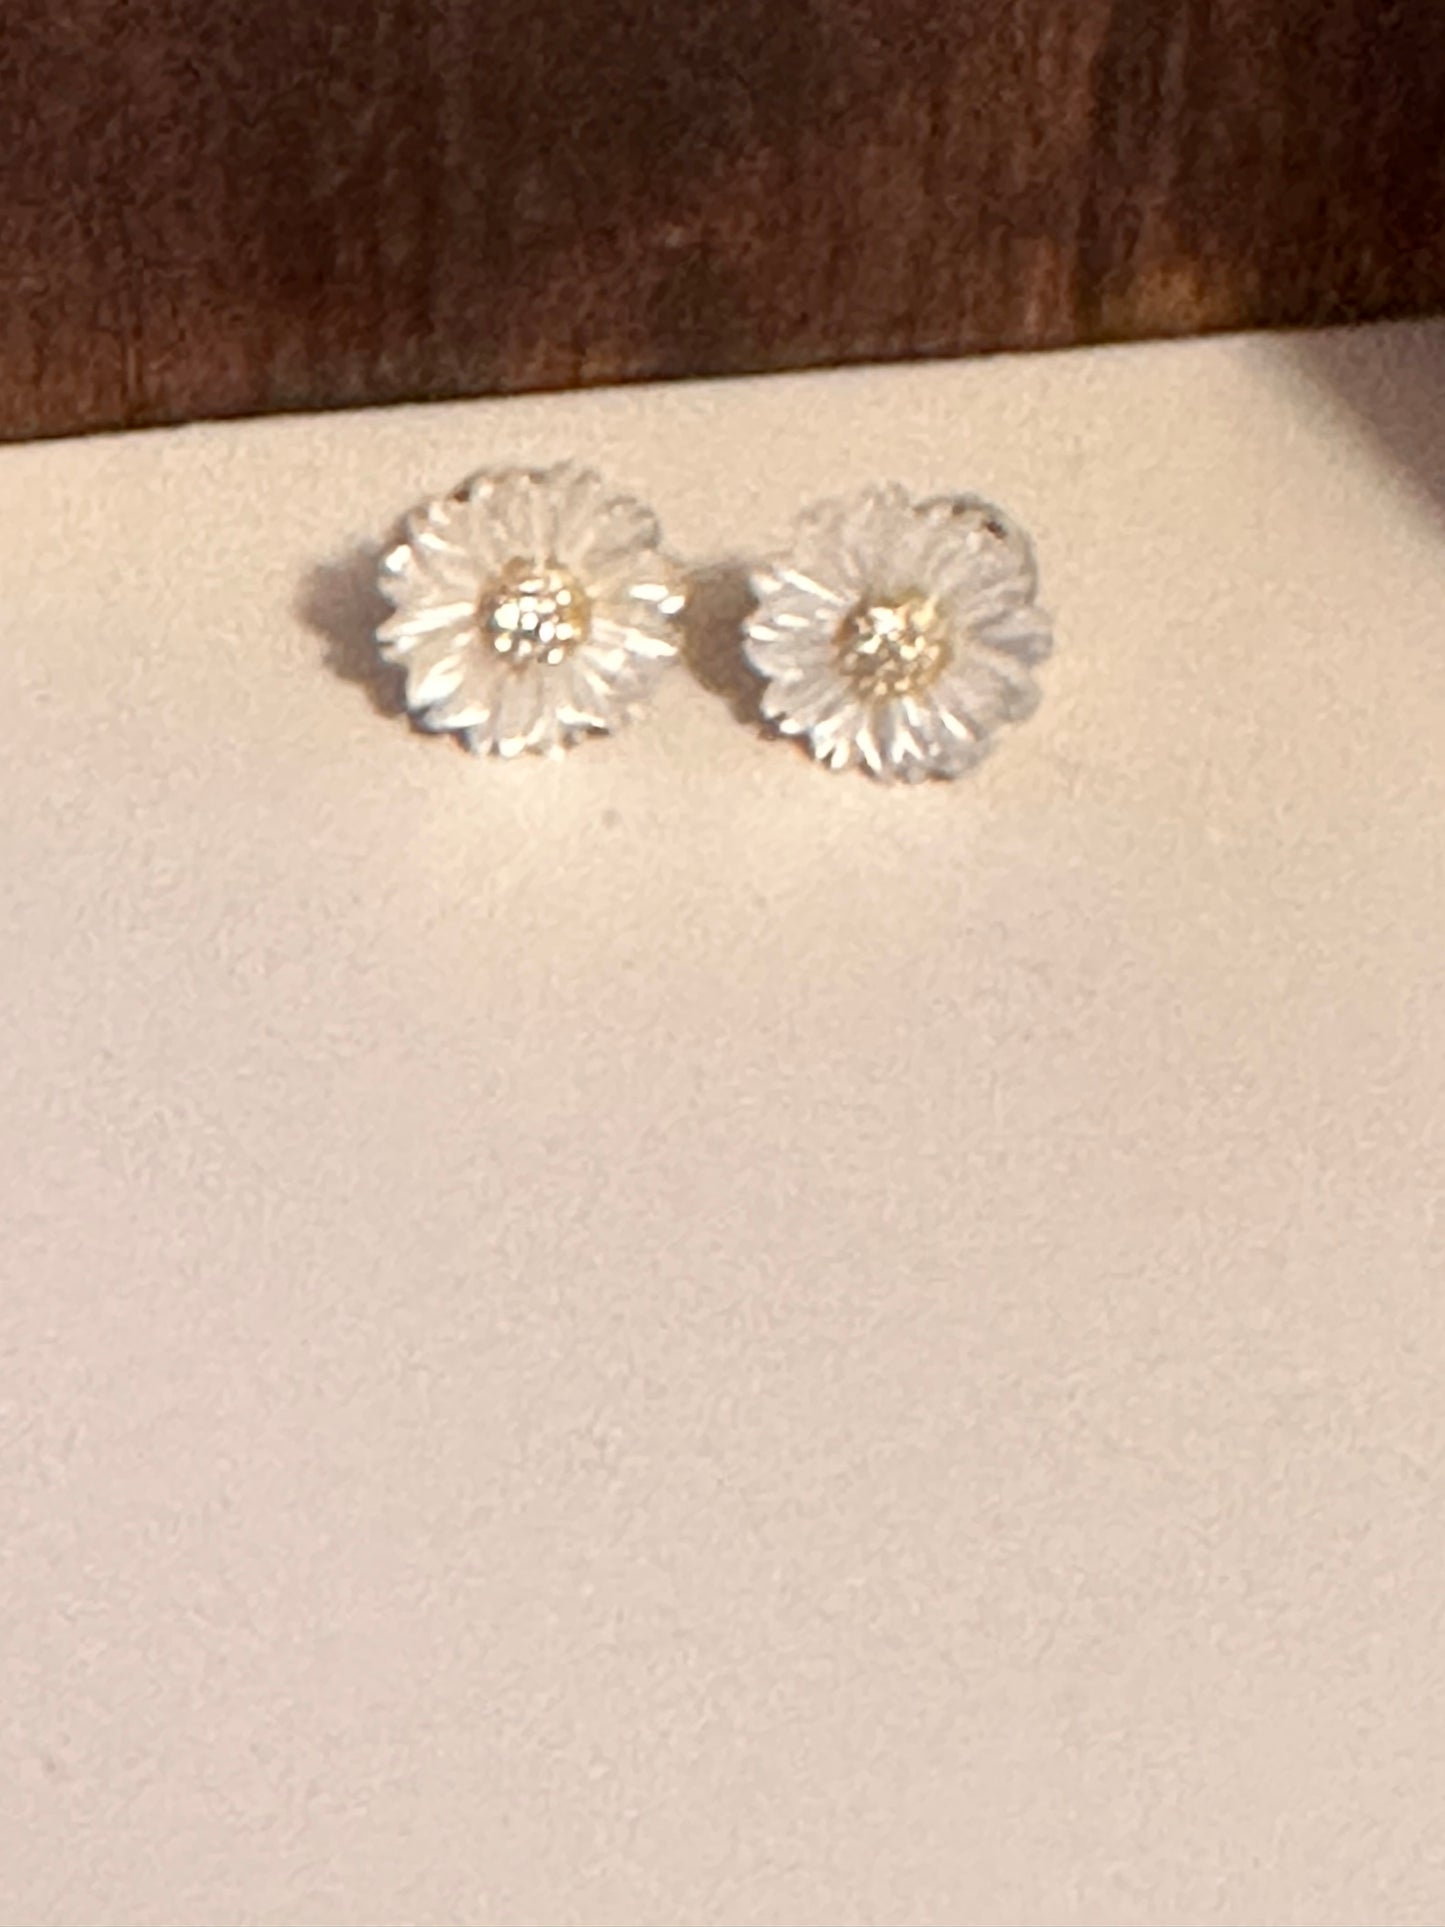 Mini Daisy earrings